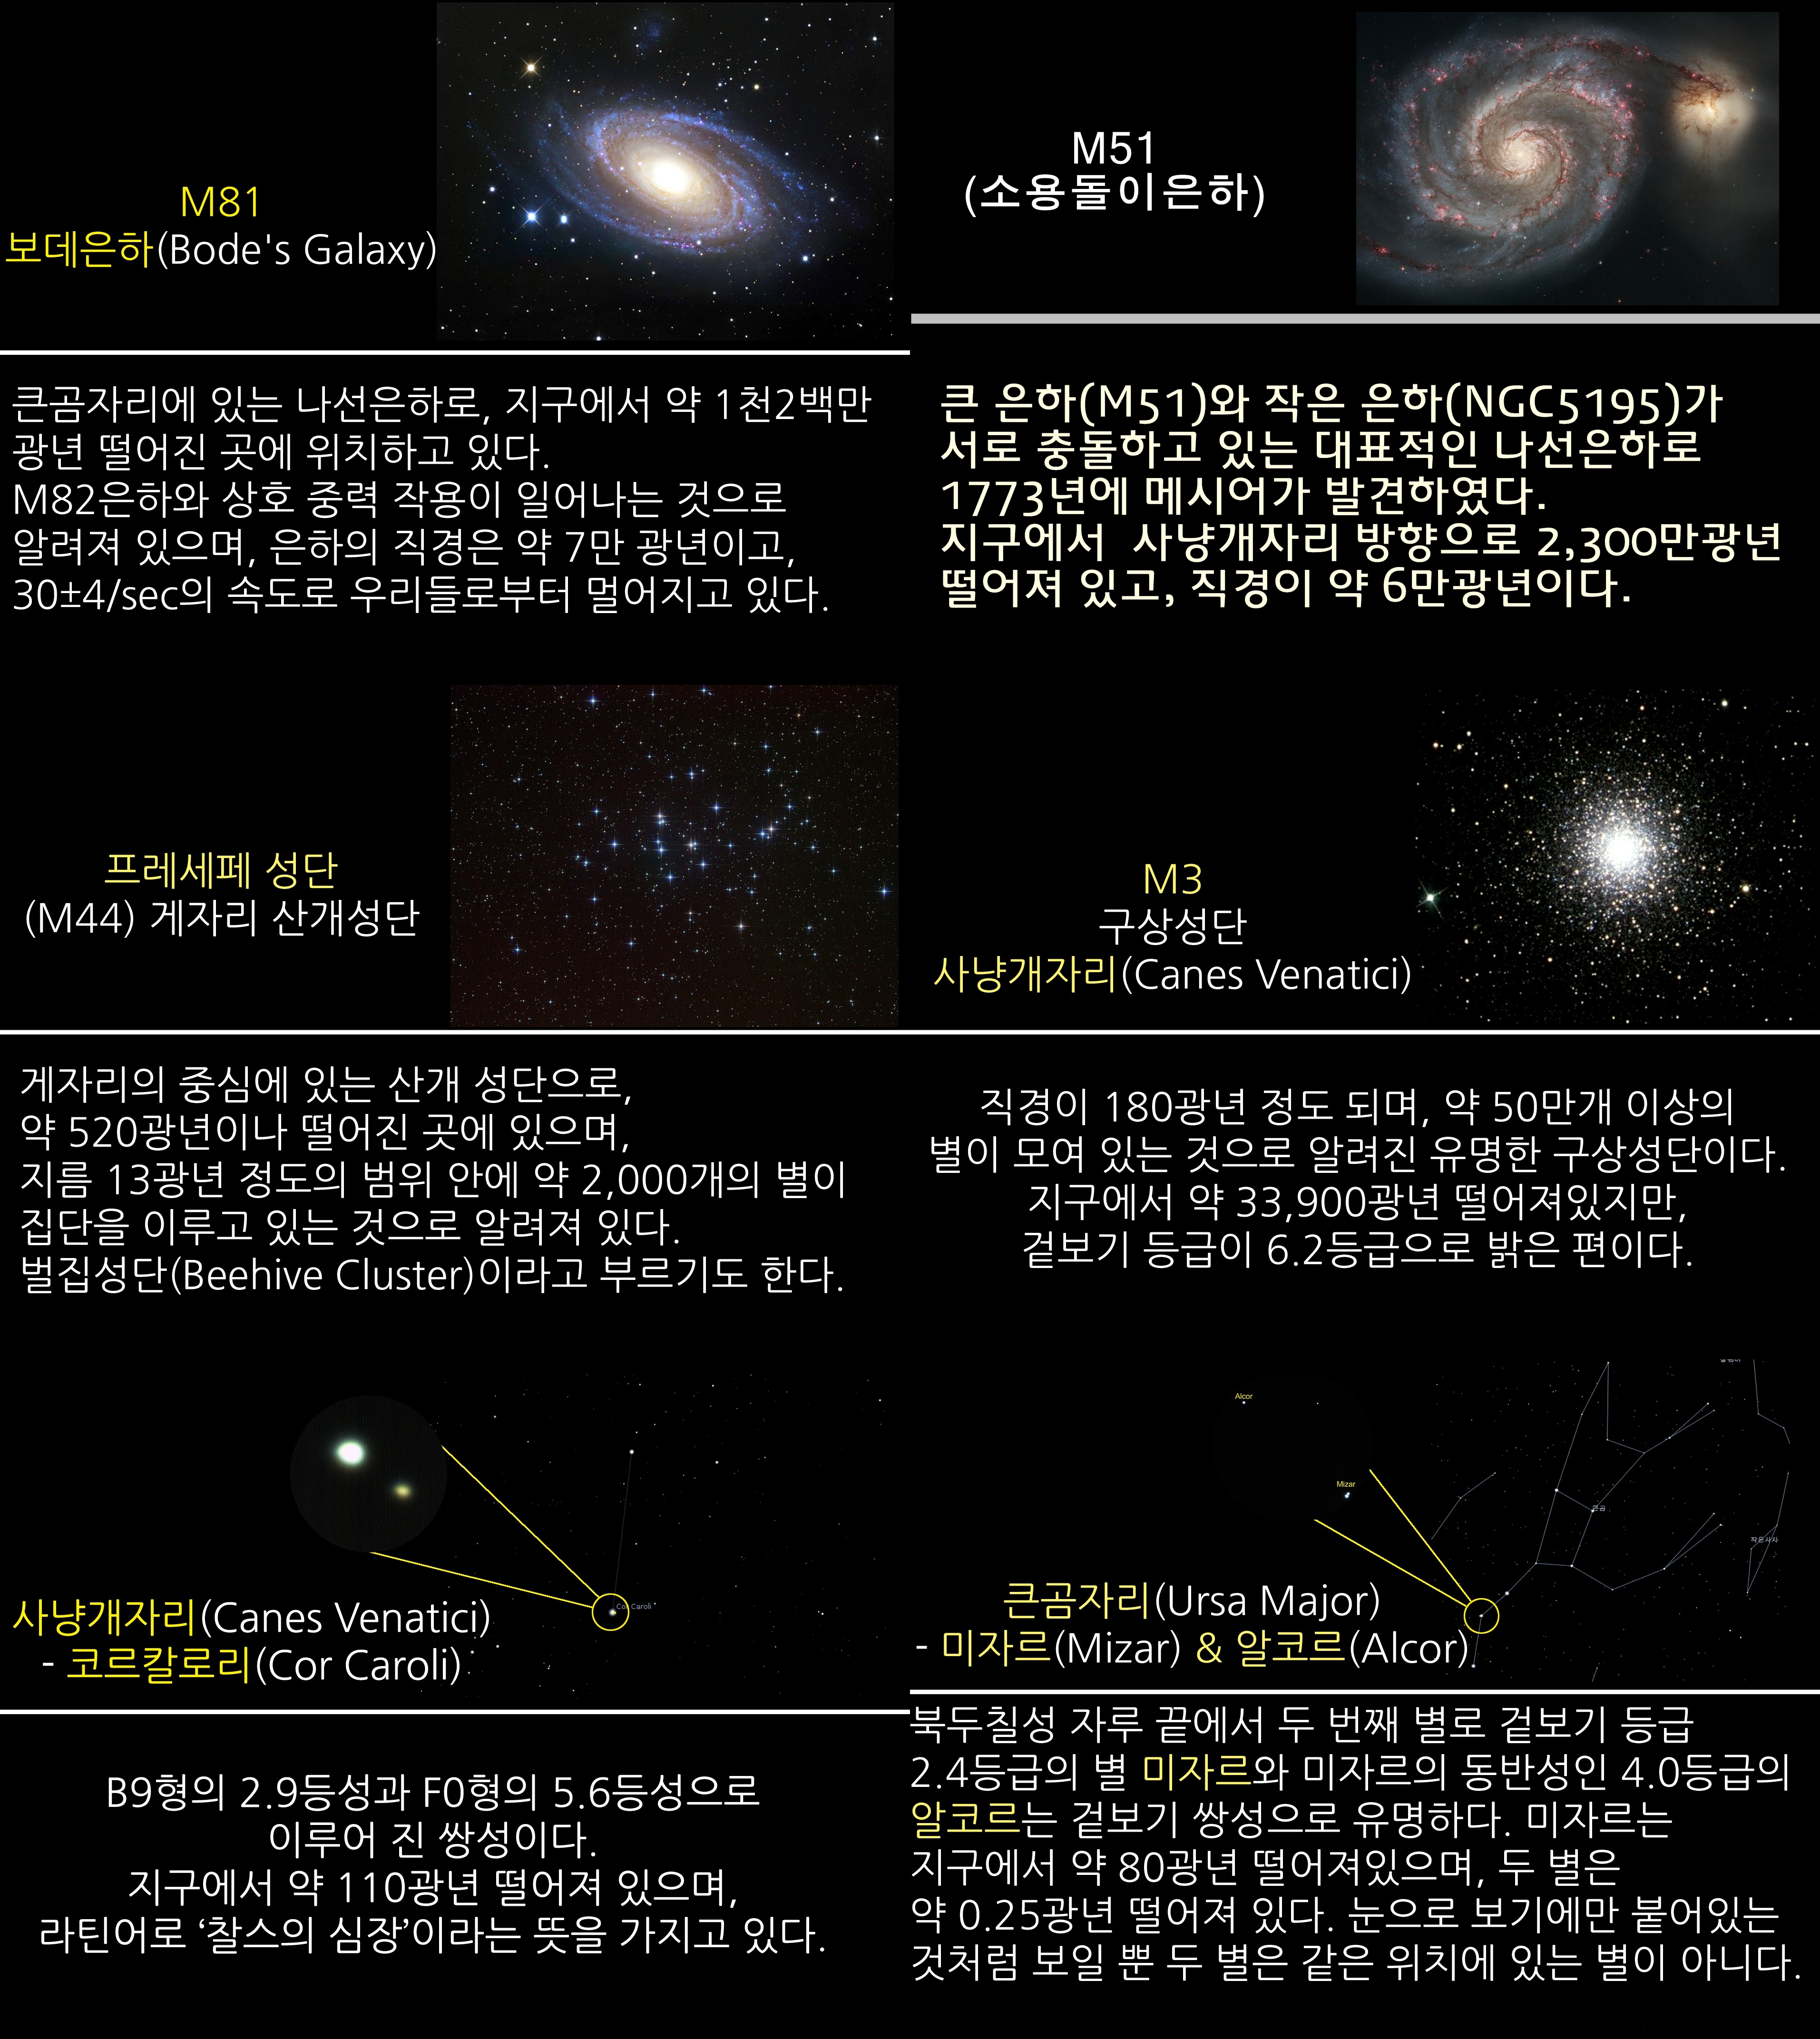 2018년 4월 주요 천체관측대상